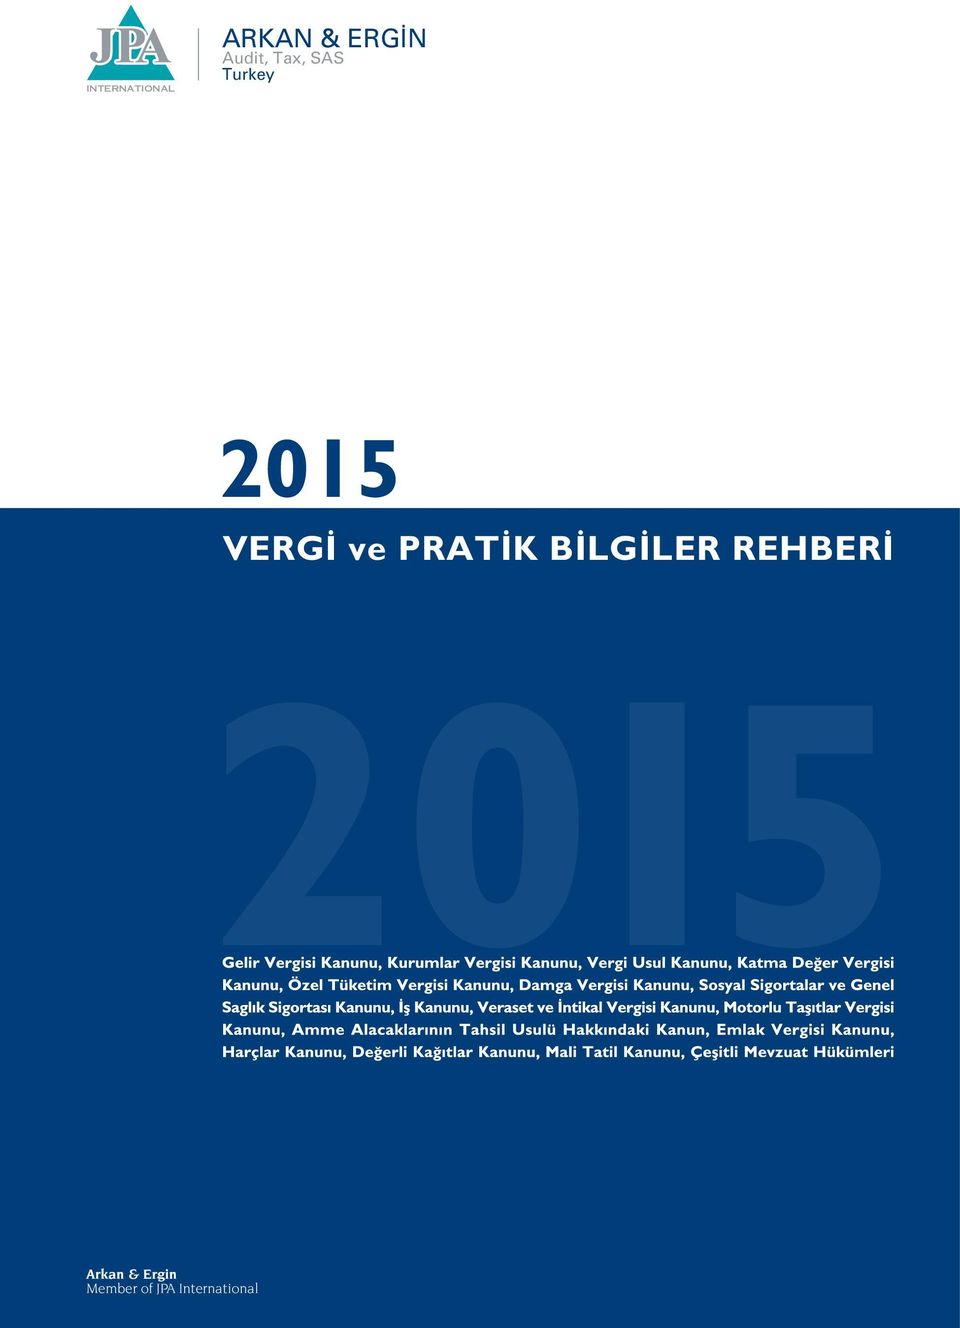 Turkey 2015 VERG ve